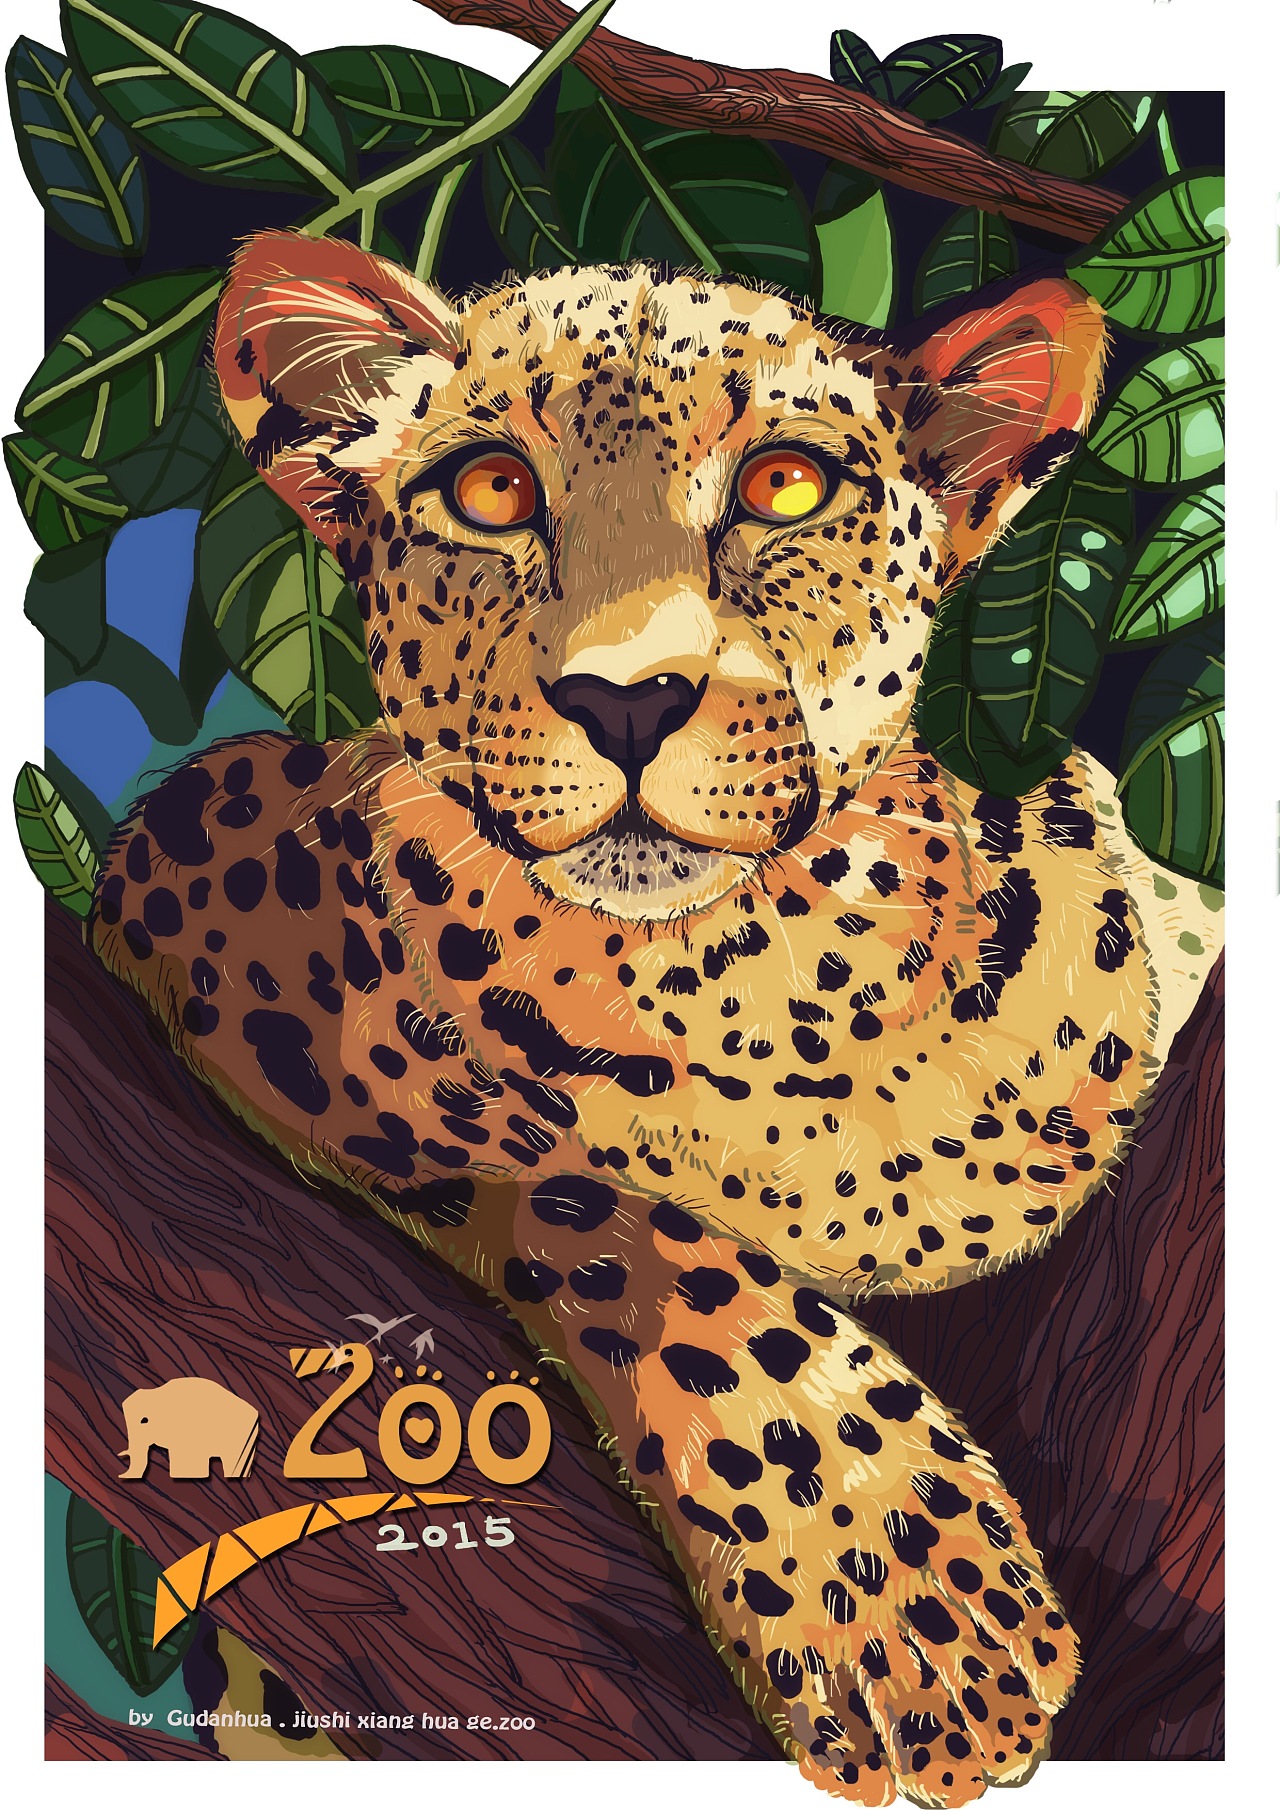 突然想画一组关于动物主题的插画,如果国内的动物园能有这样的海报